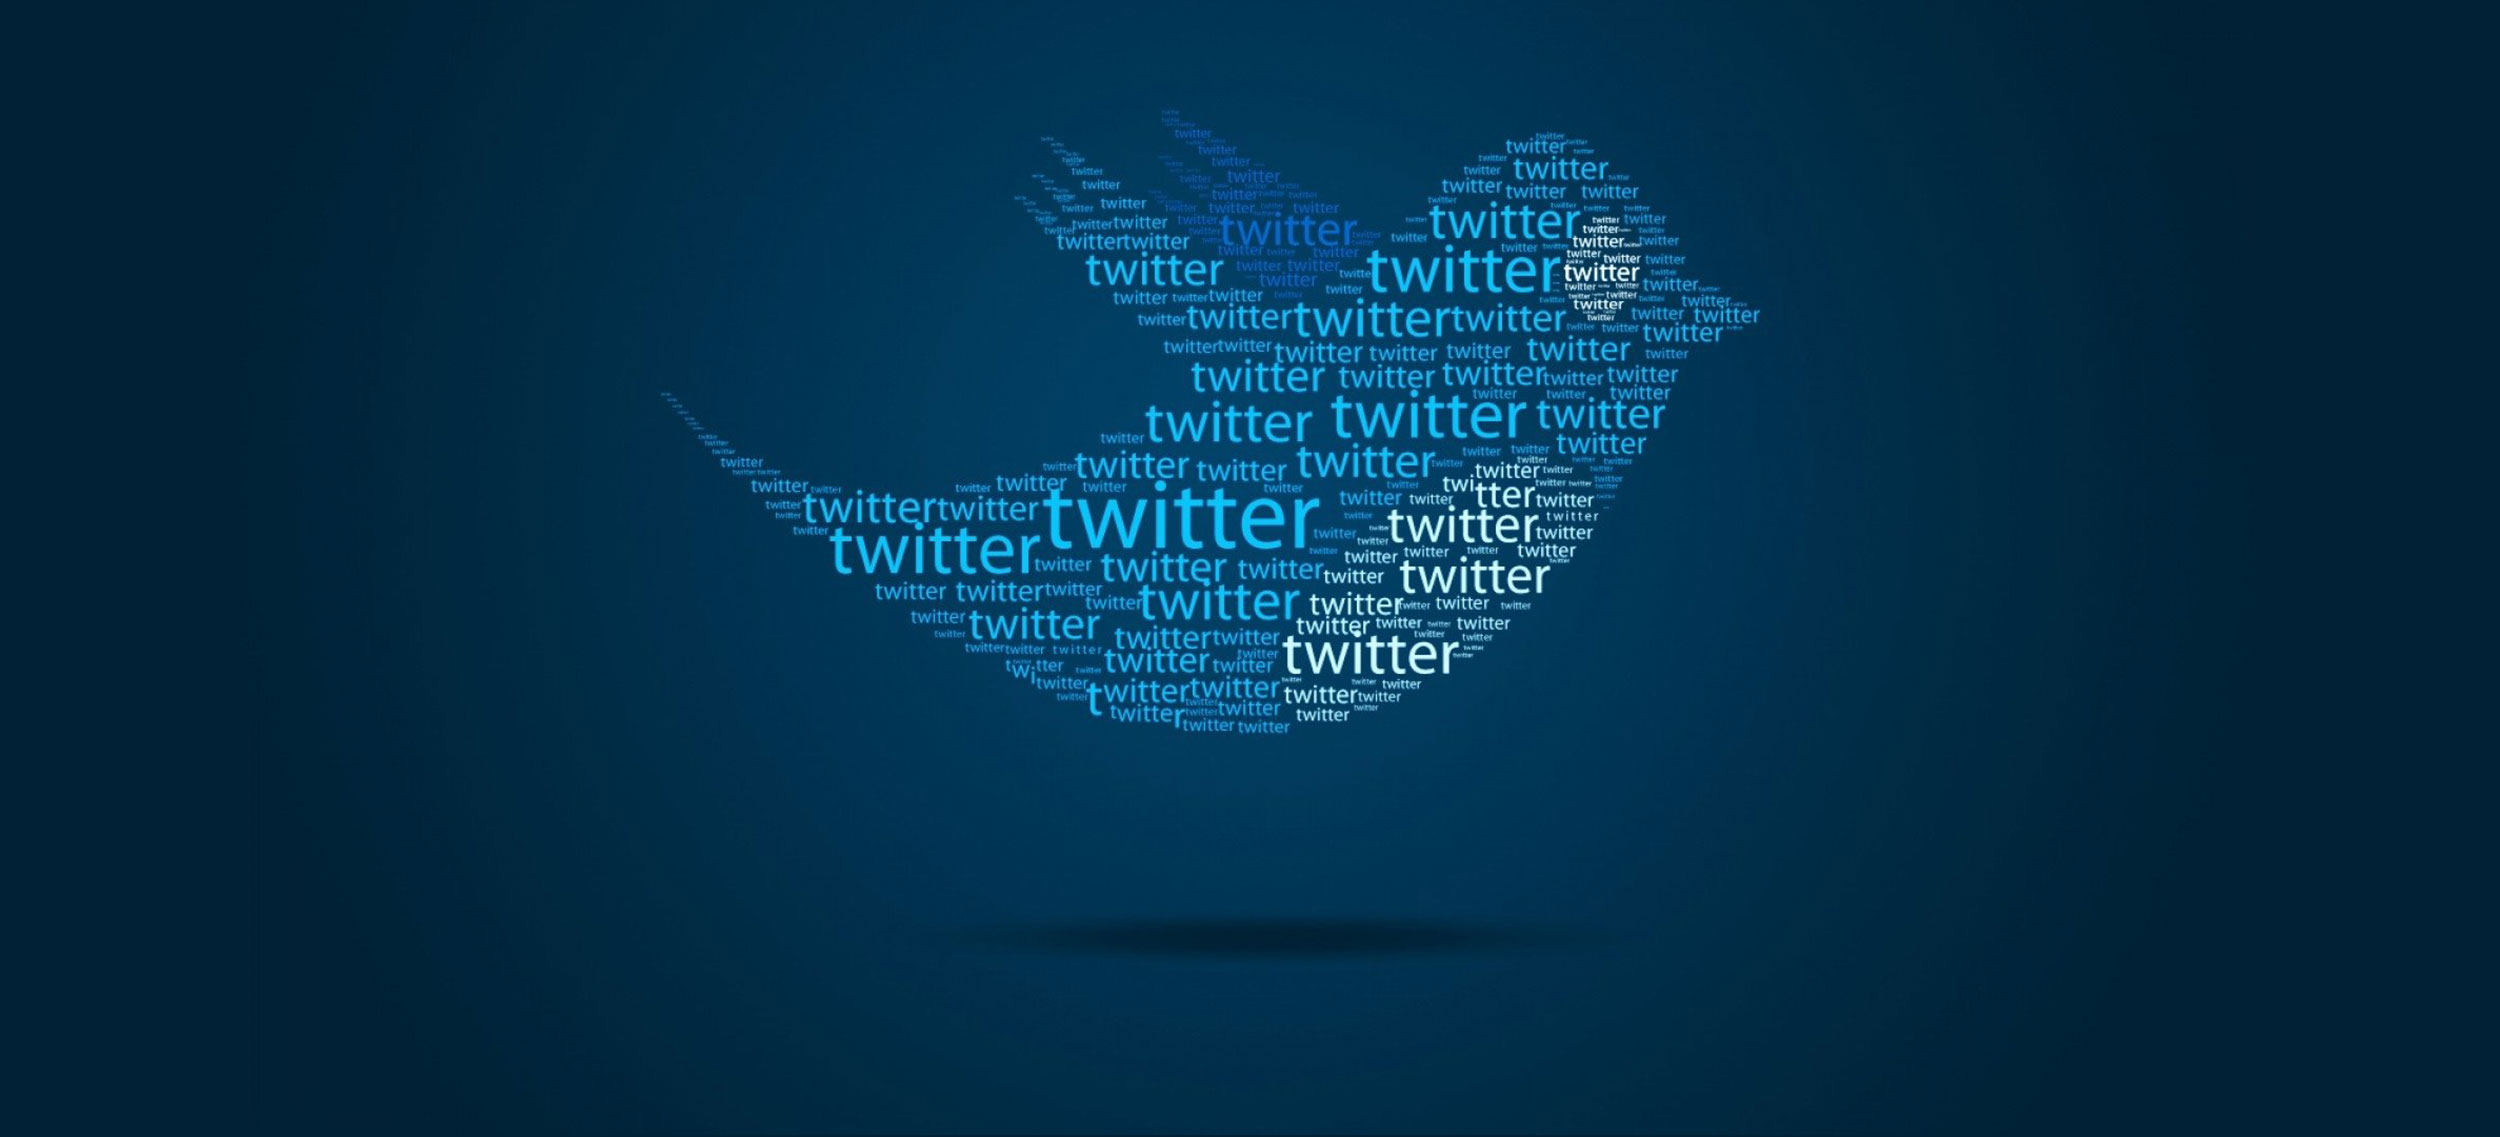 Twitter, TikTok’u Satın Almak İçin ‘Ön Görüşmeler’ Yaptı